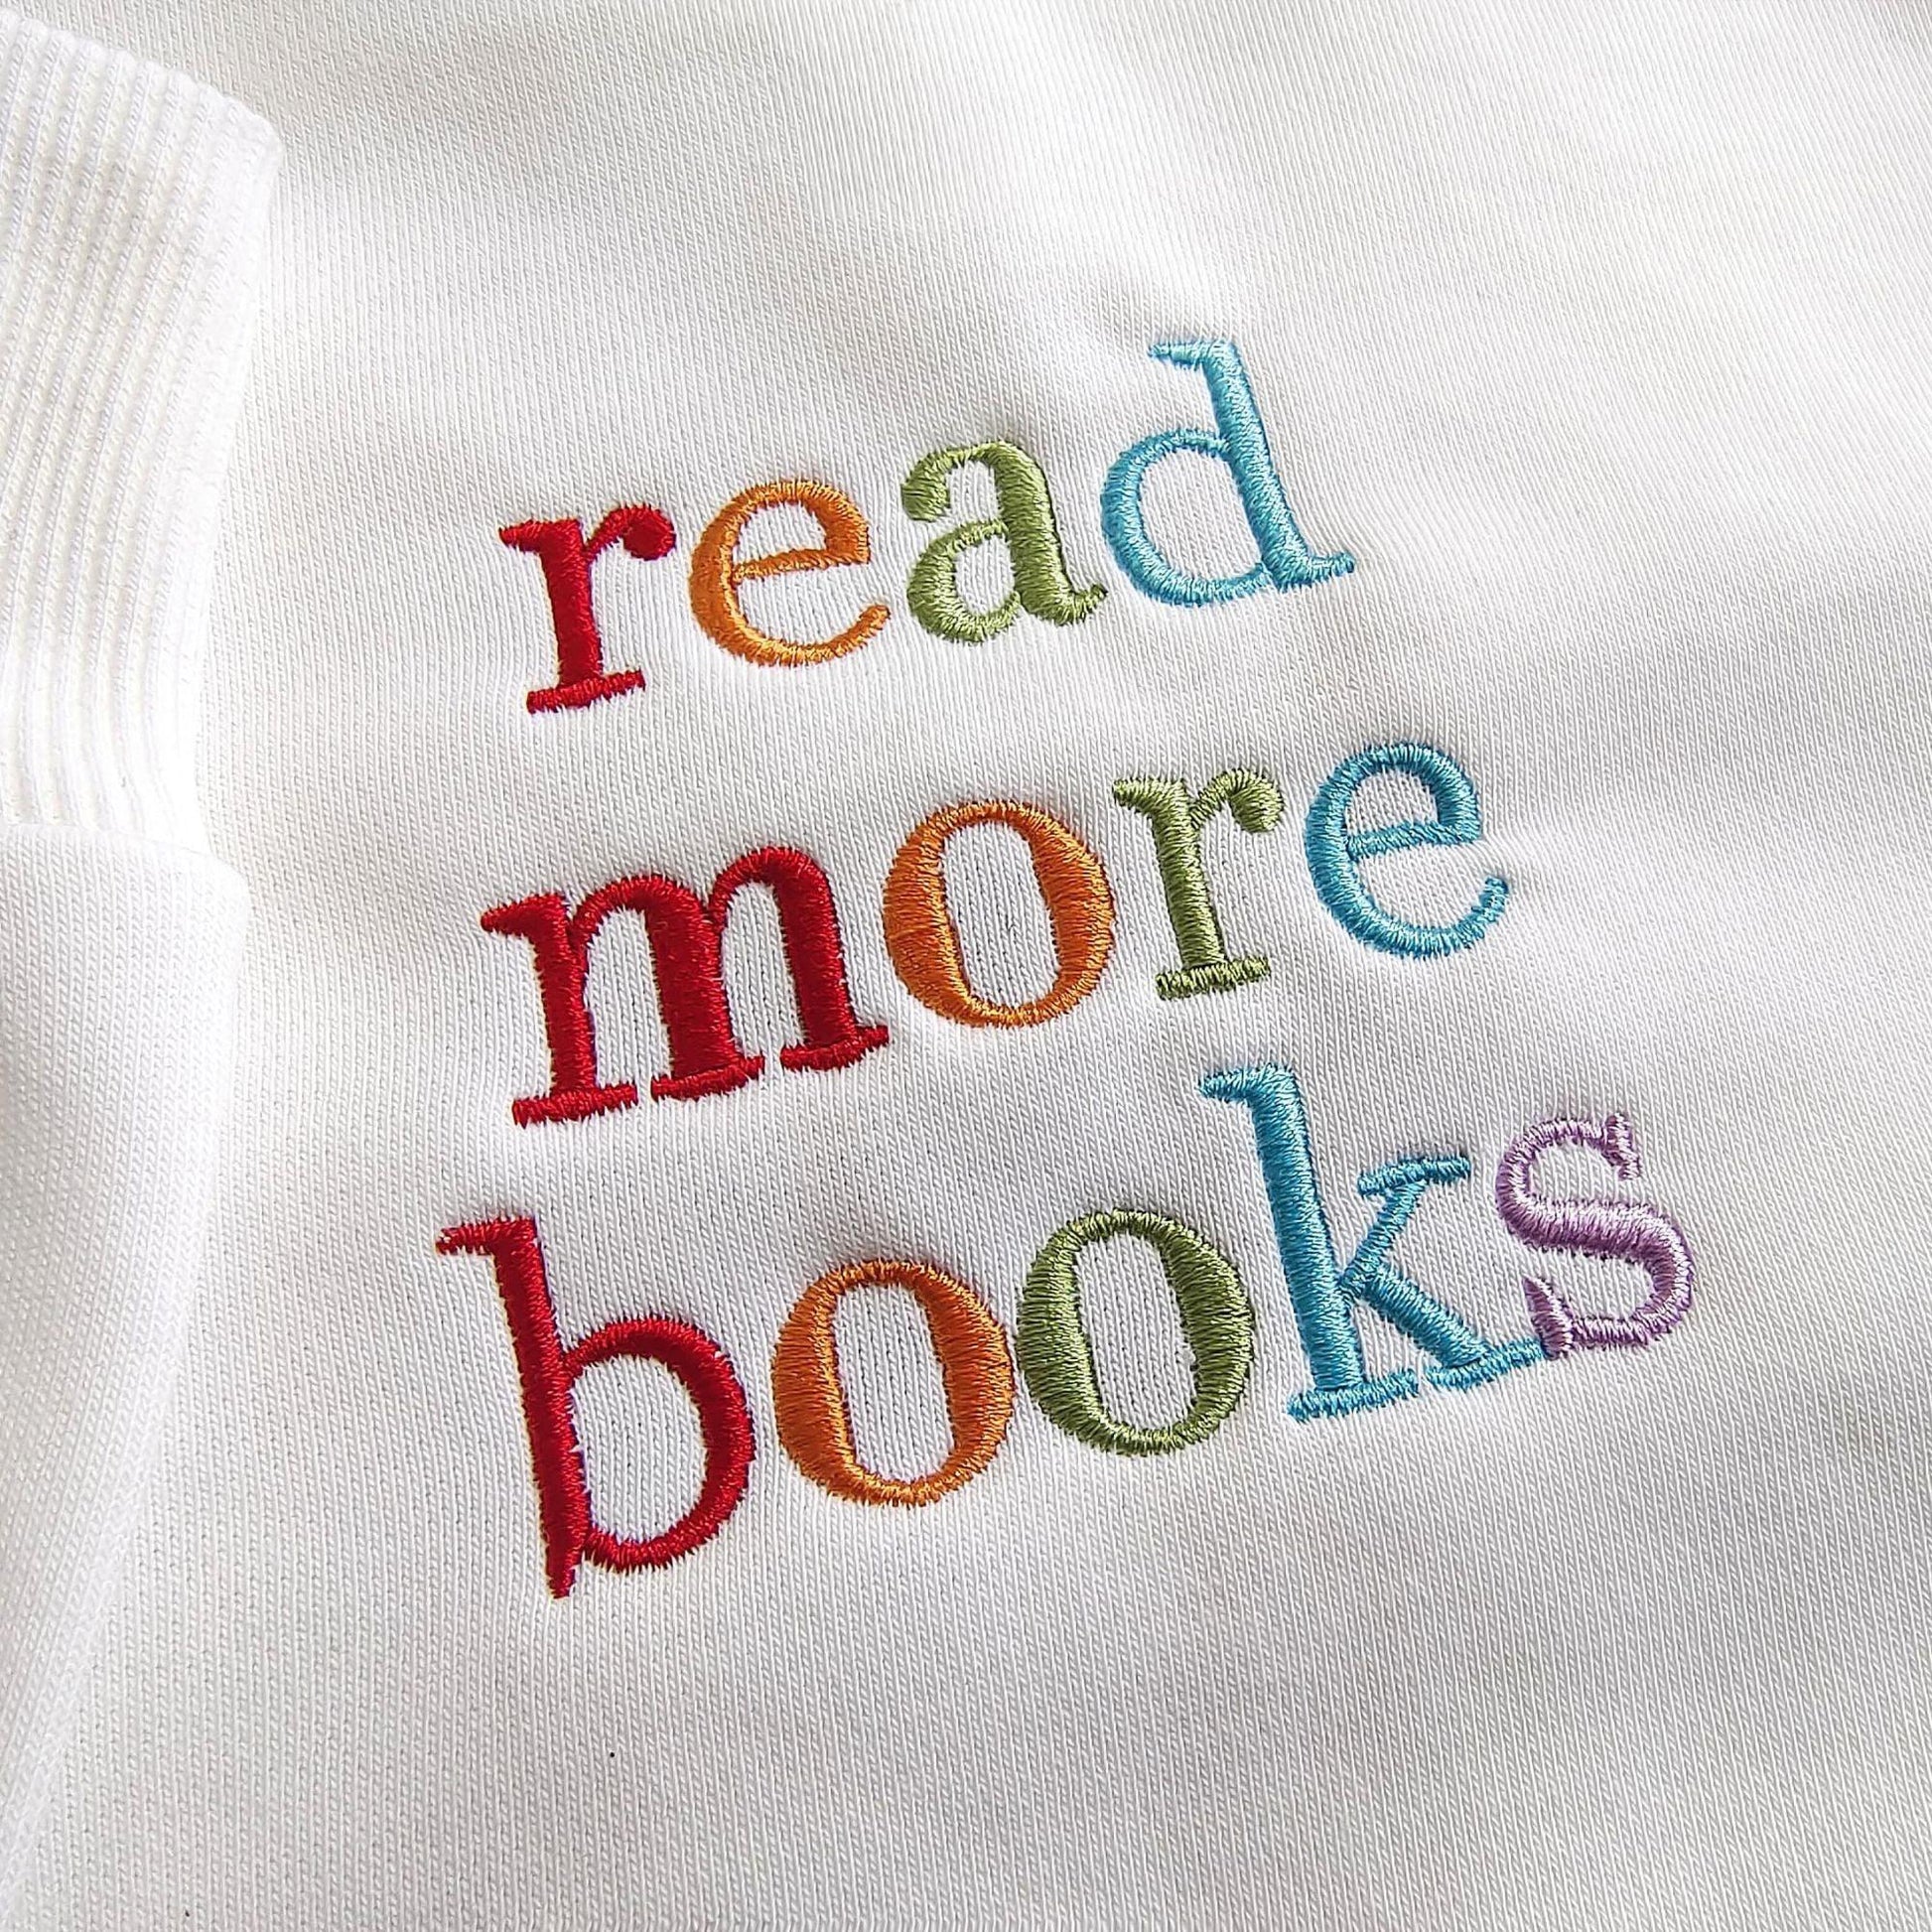 Mehr Bücher lesen Besticktes Sweatshirt - Geschenk für Buchleser - GiftHaus